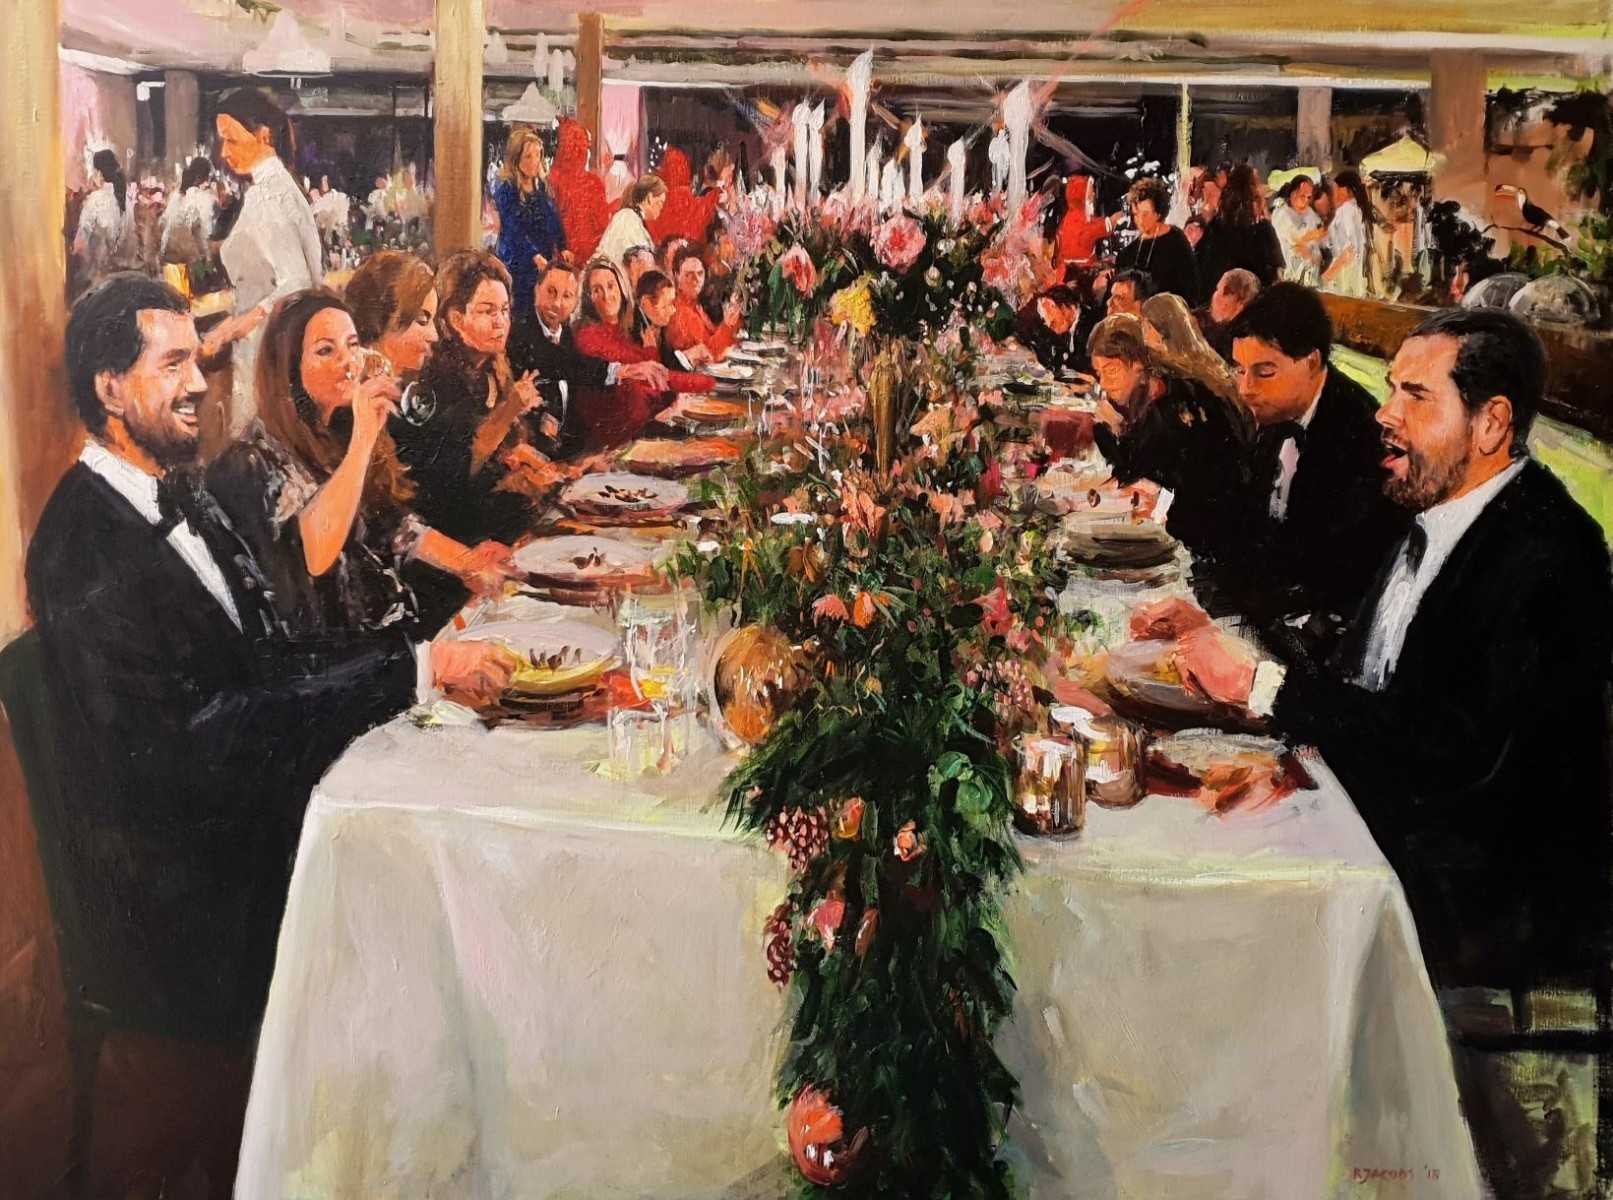 Rob Jacobs schildert doek van 120x160cm tijdens het diner in Vught, Noord-Brabant.